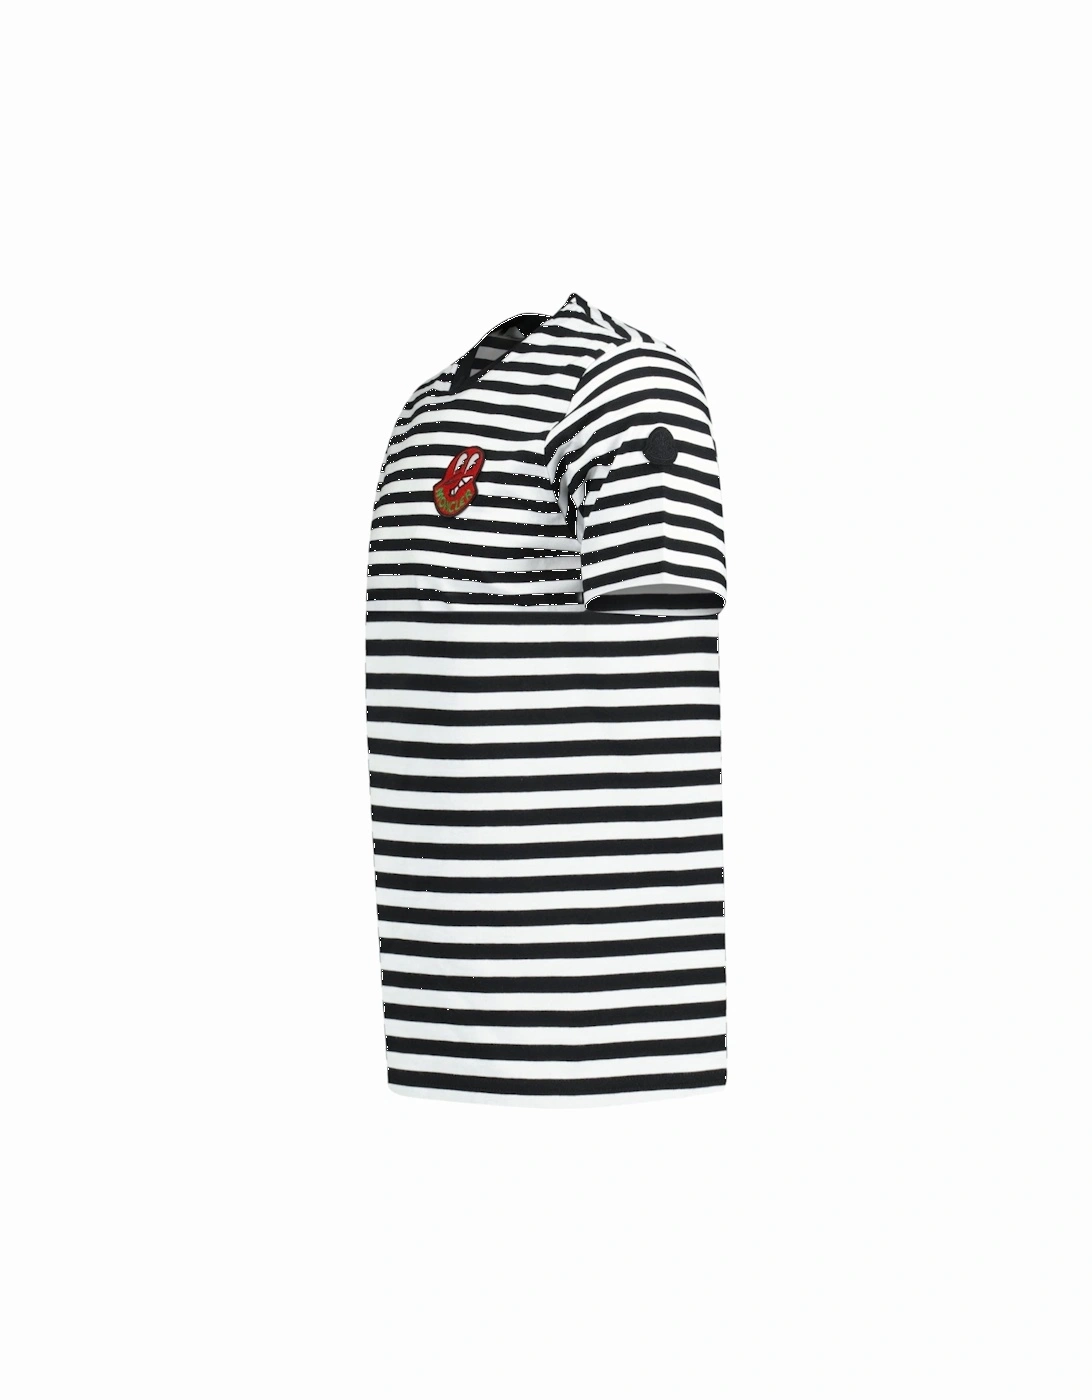 'Rigato' Logo T-Shirt Black & White Stripe